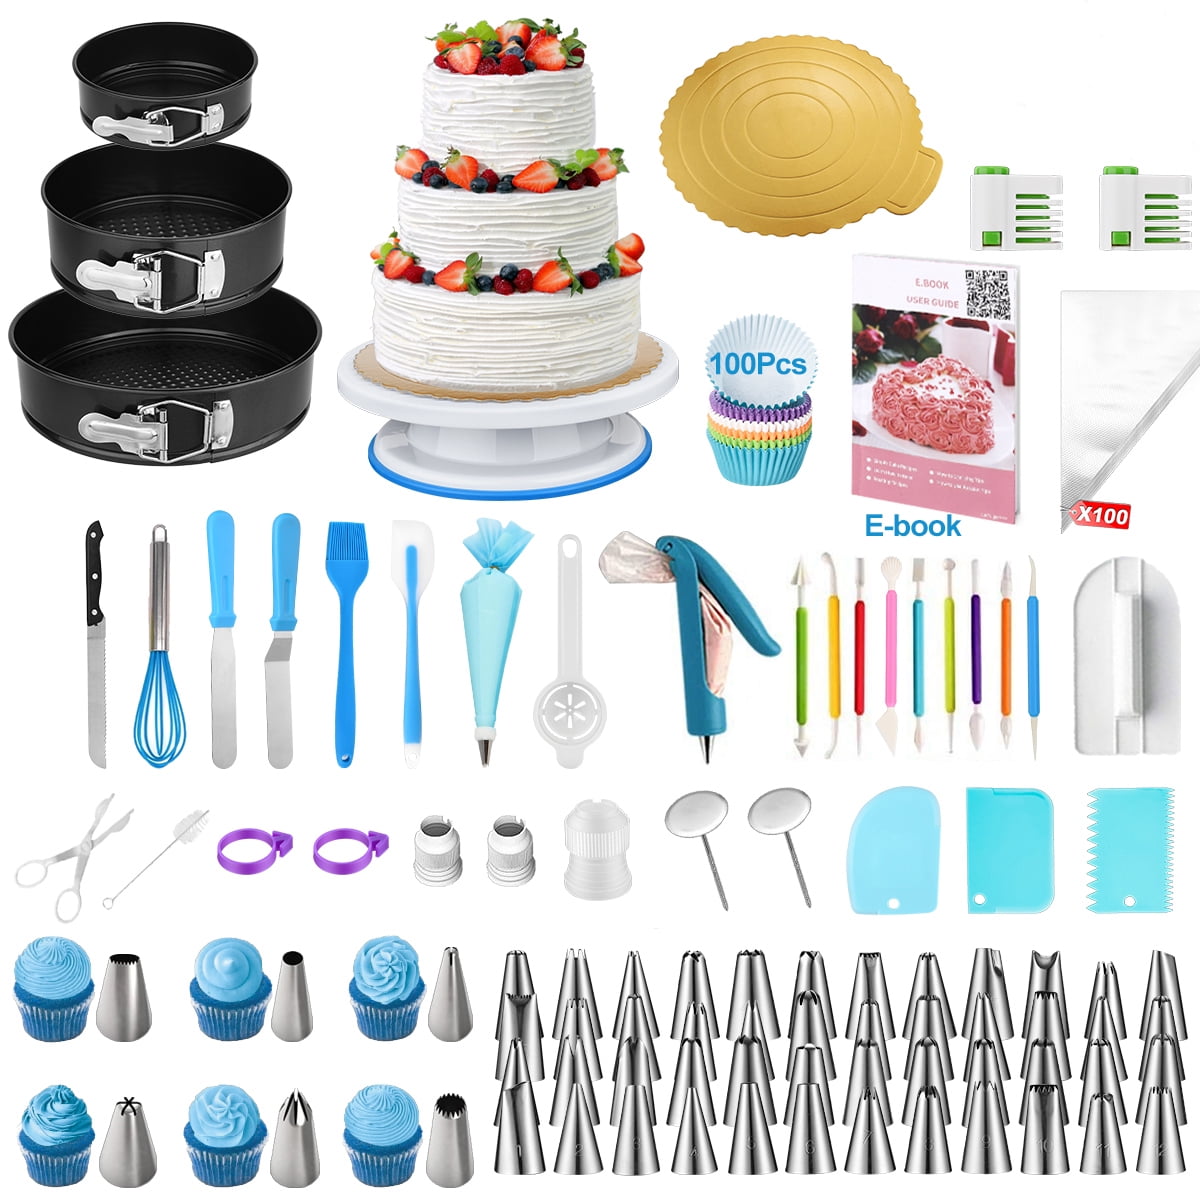  Kit de decoración de tartas, juego de 290 piezas de